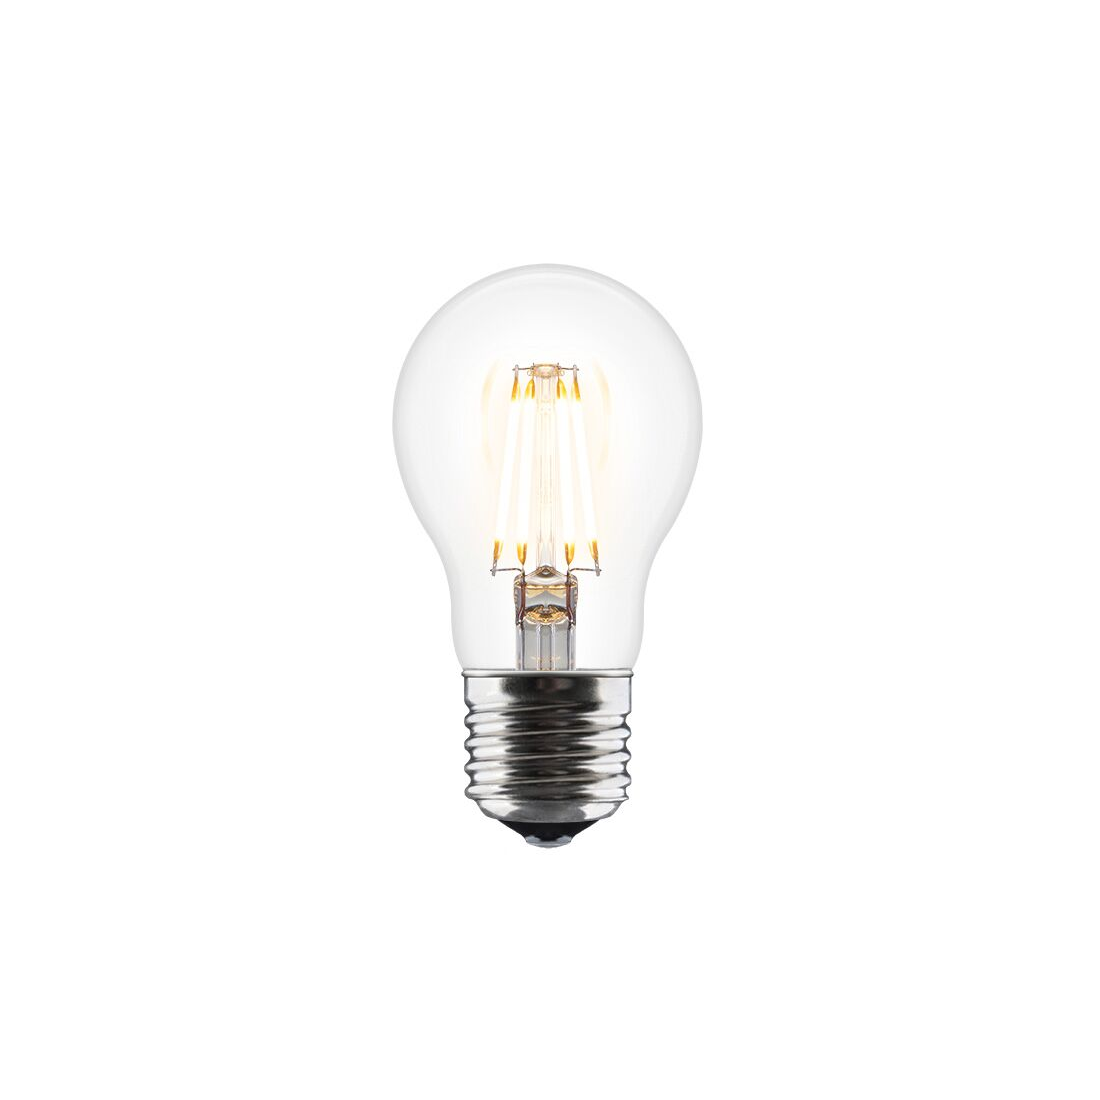 LED A++ lågenergi LED lampa Idea, Umage